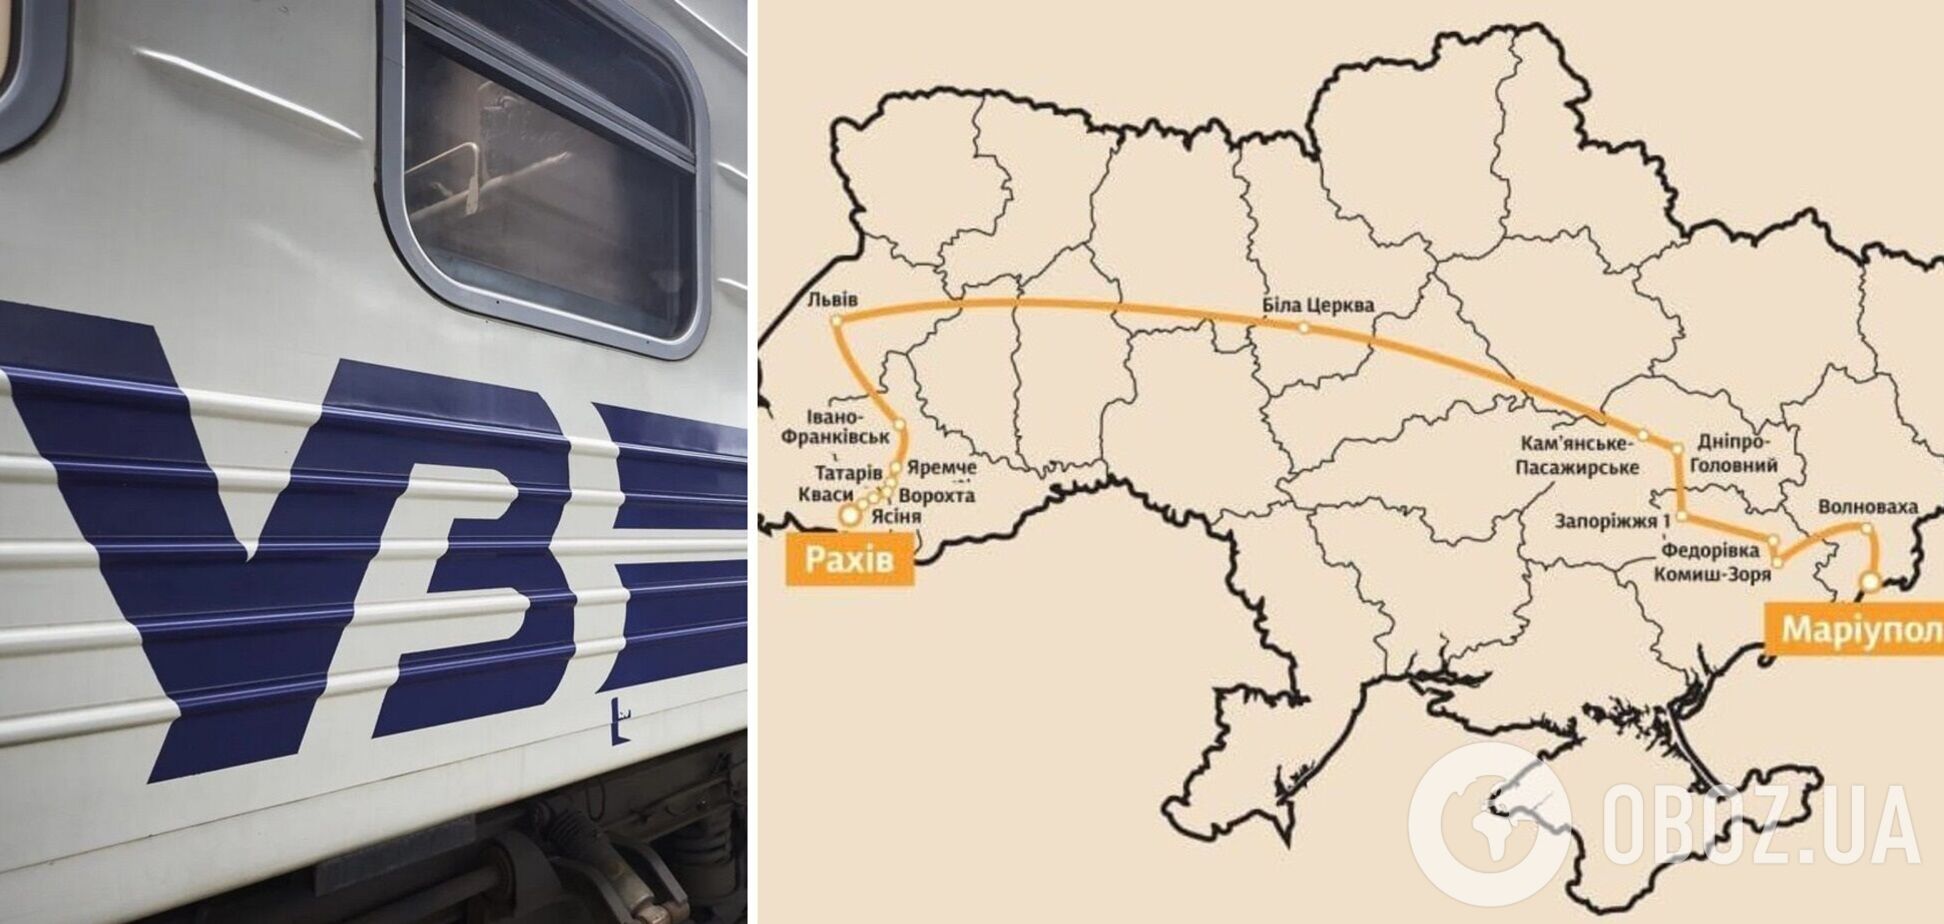 'Укрзалізниця' запустила самый длинный пассажирский рейс, протяженностью 1 806 км